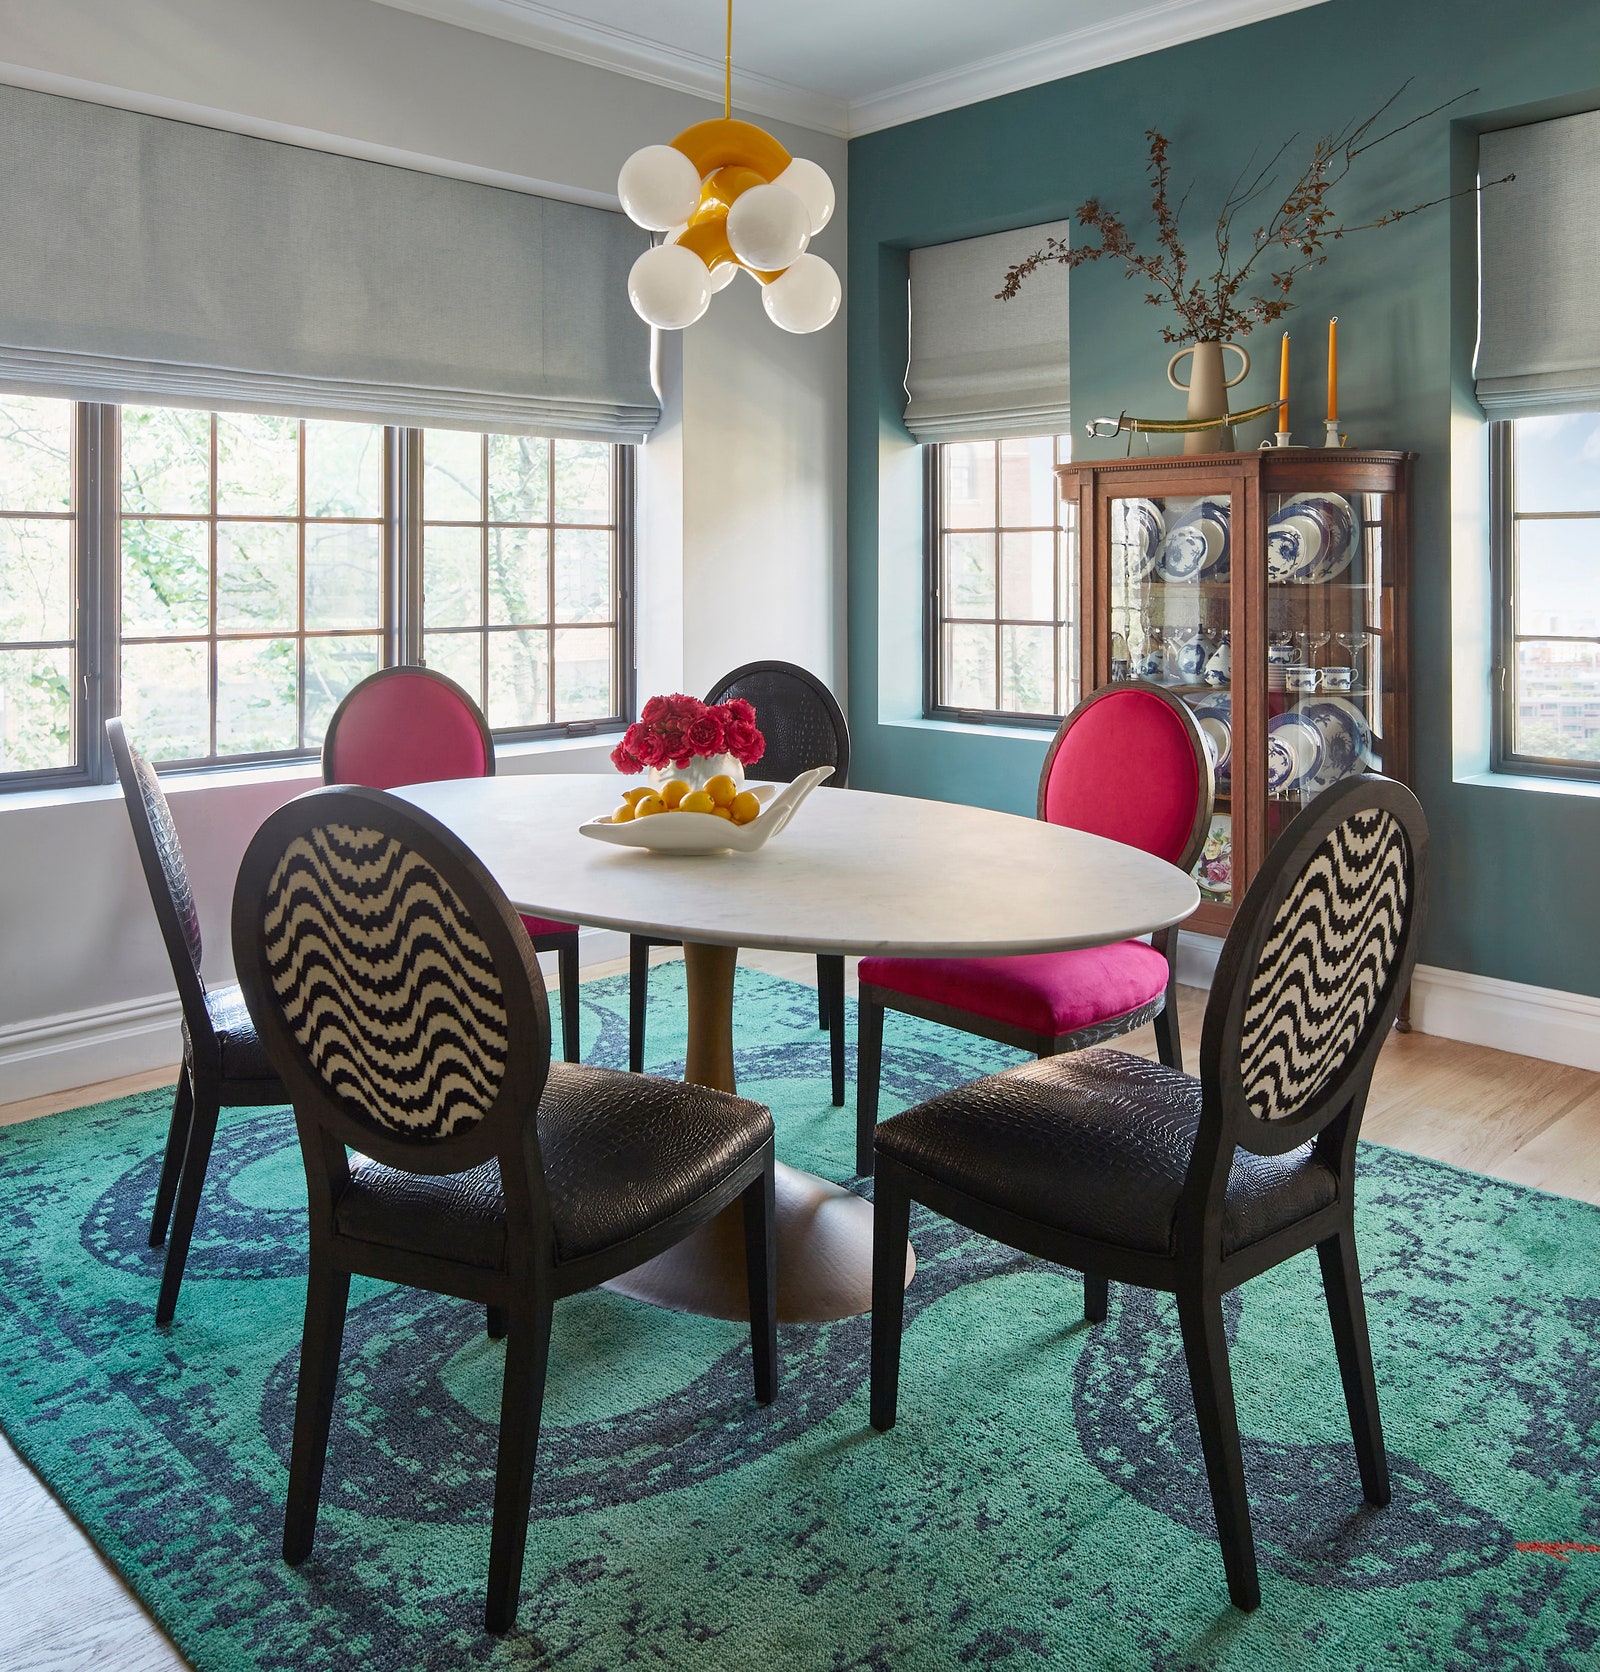 L'image peut contenir des meubles une chaise une salle à manger à l'intérieur un design d'intérieur un sol une salle à manger un salon et une décoration intérieure